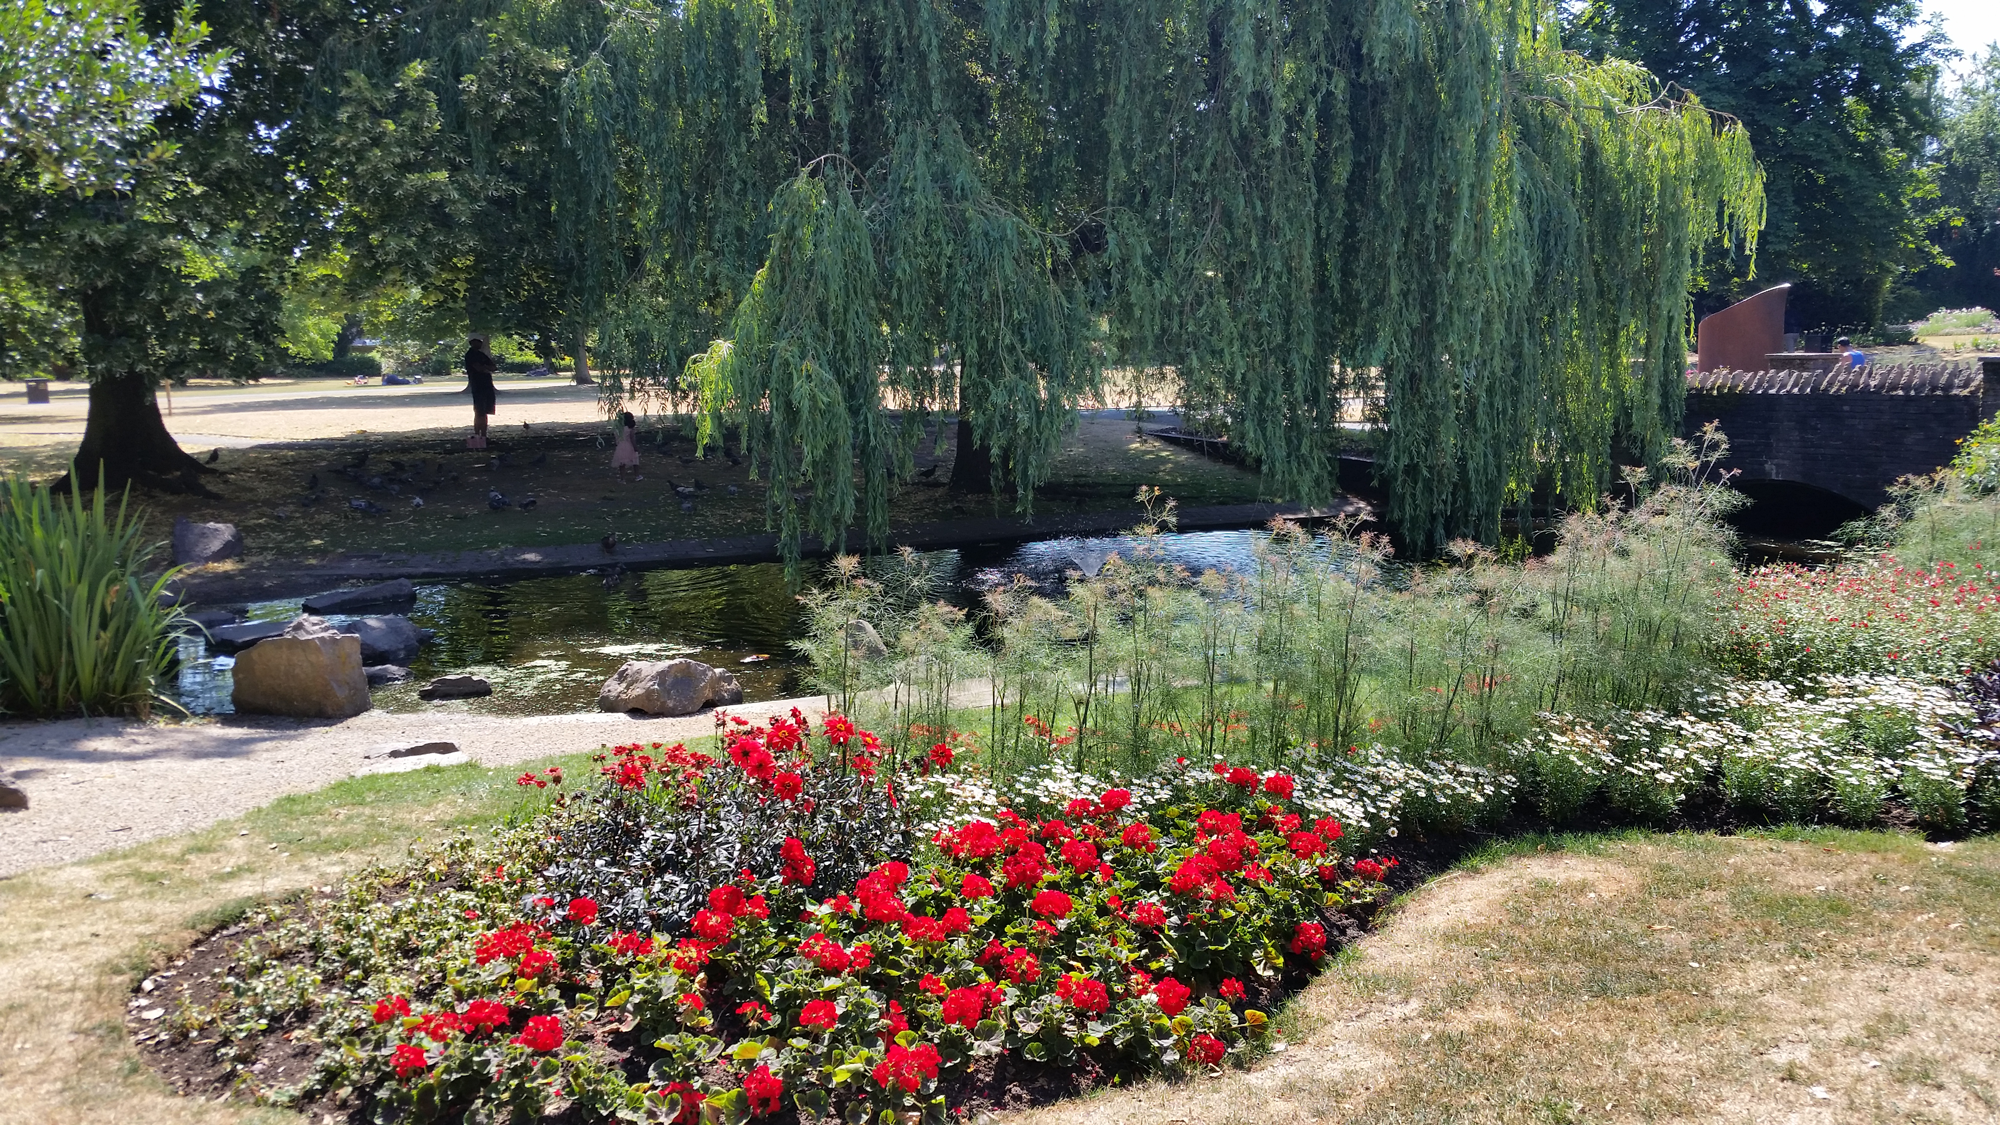 Flowers & Willow in Queen’s Park